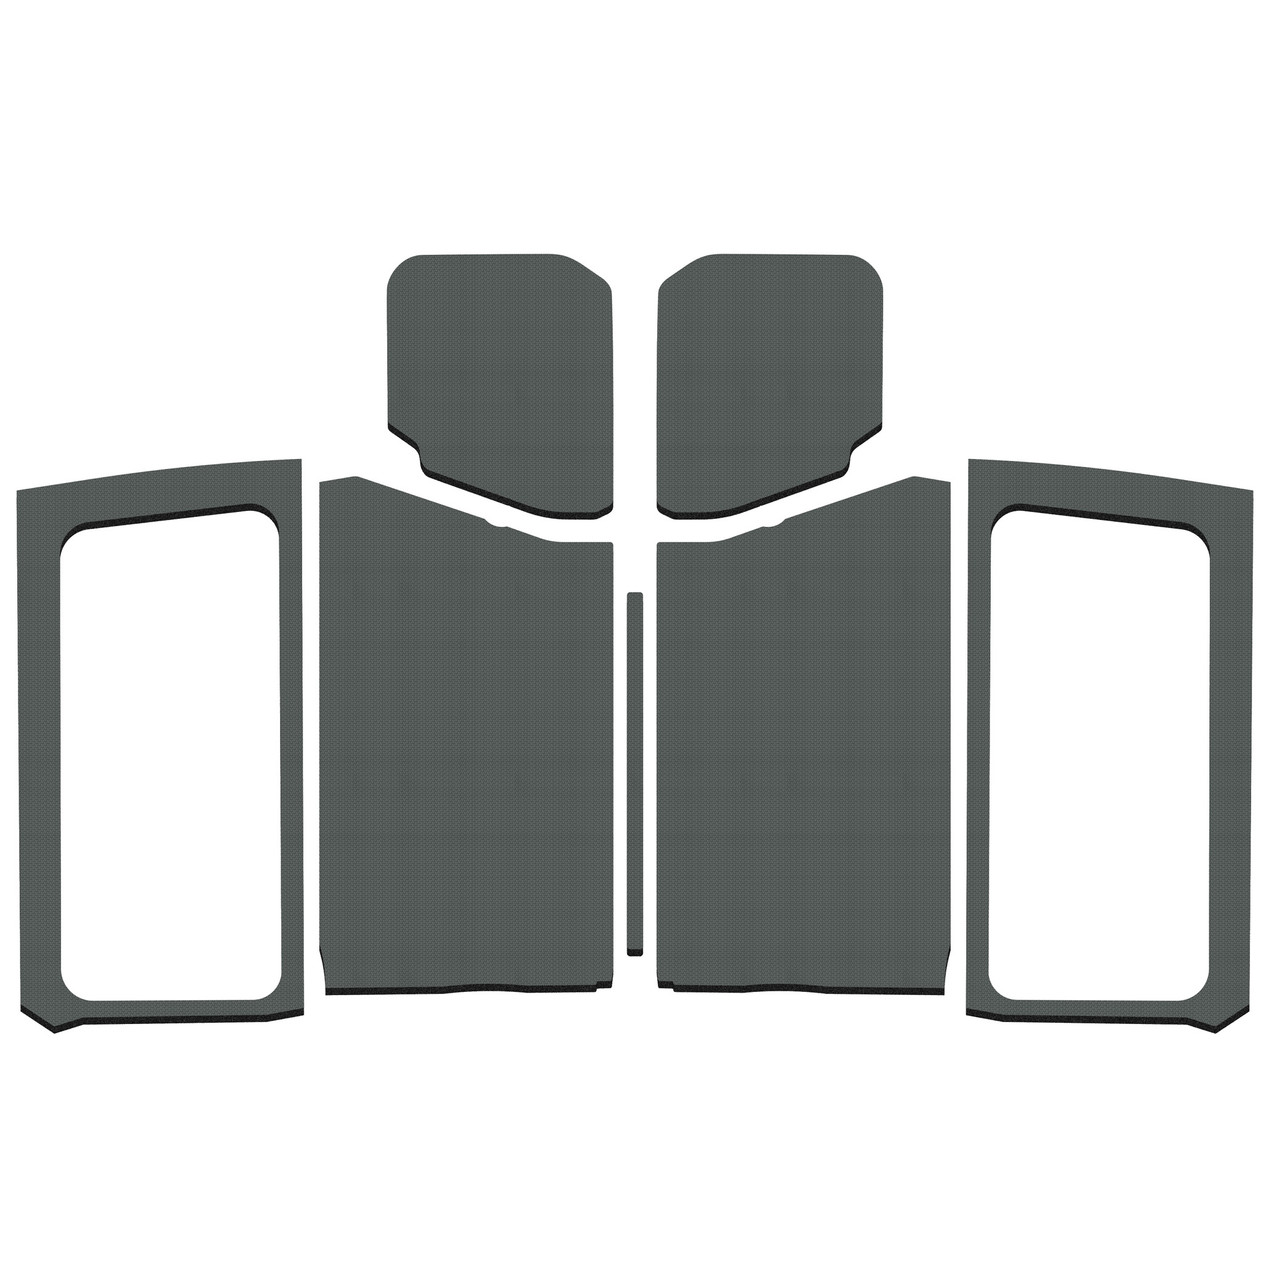 Wrangler JL 2-Door - Gray Leather Look Complete Kit - Design Engineering,  Inc